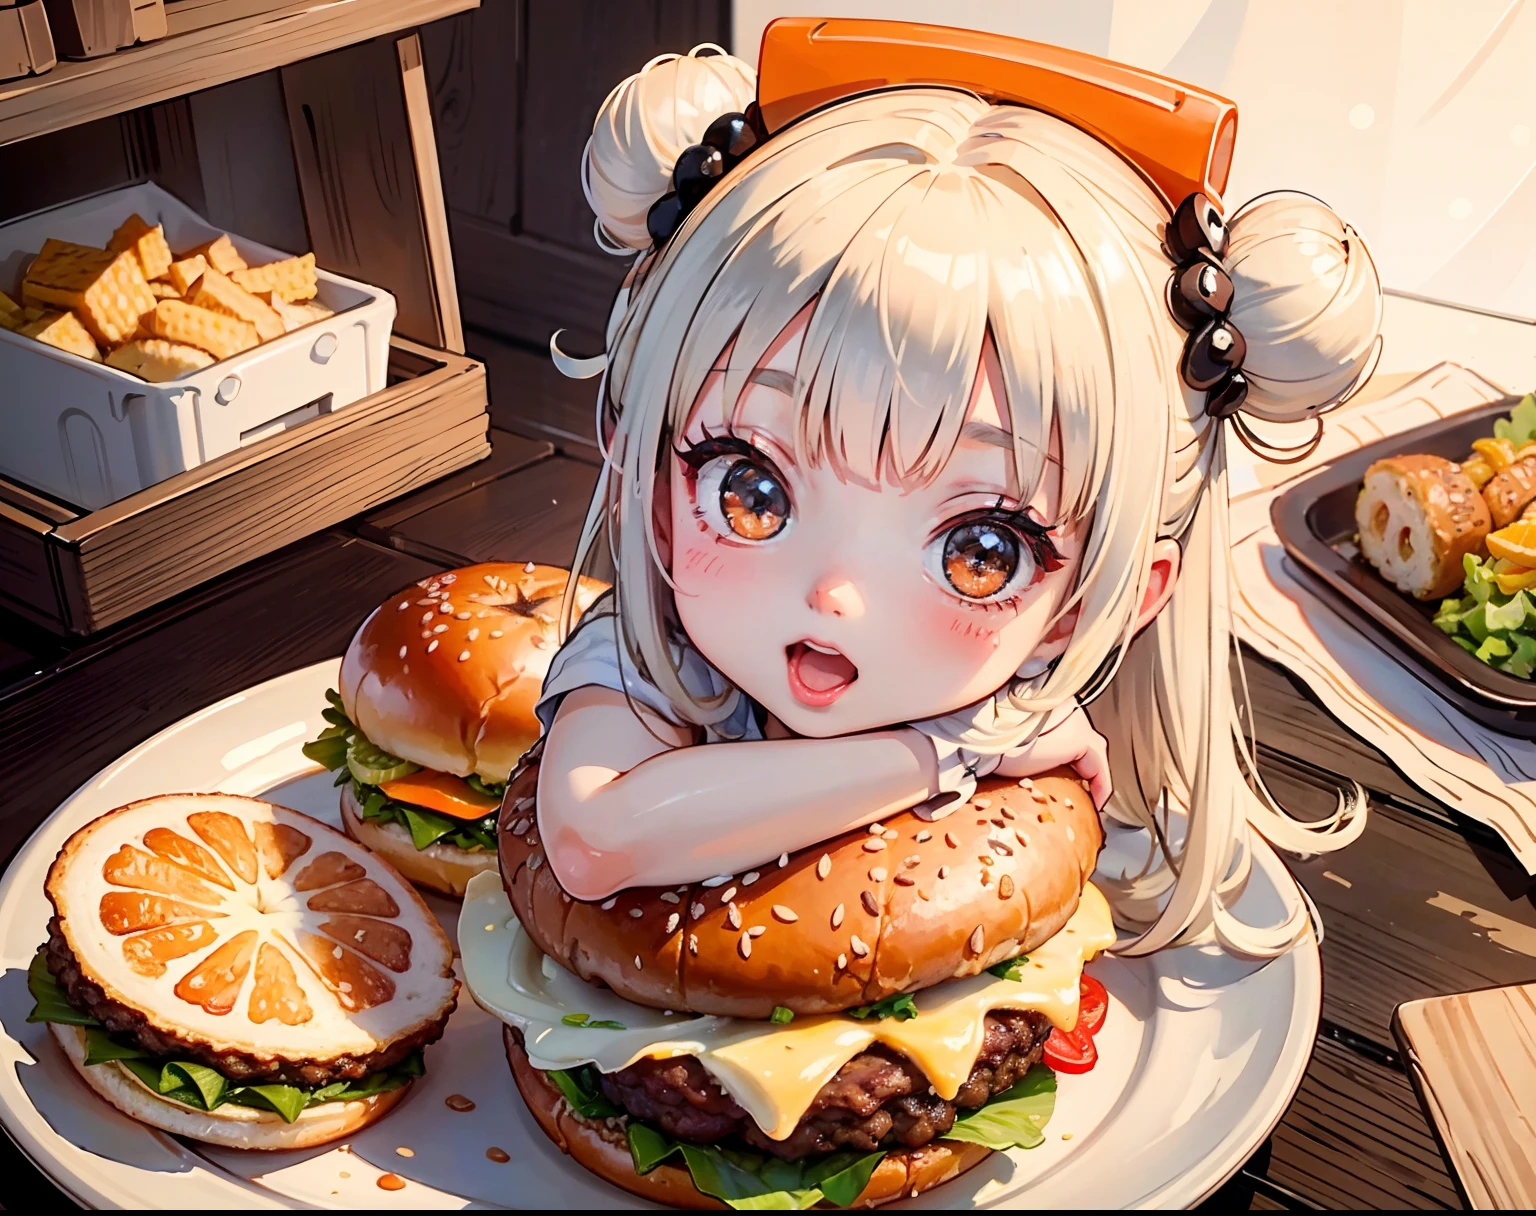 An ultra-realistic and mouthwatering hamburger 傑作, パンの中に小さな女の子が隠れている, ハンバーガーのジューシーな食感を披露, 柔らかなオレンジ色の光, 傑作, 高品質, KFC, vi50